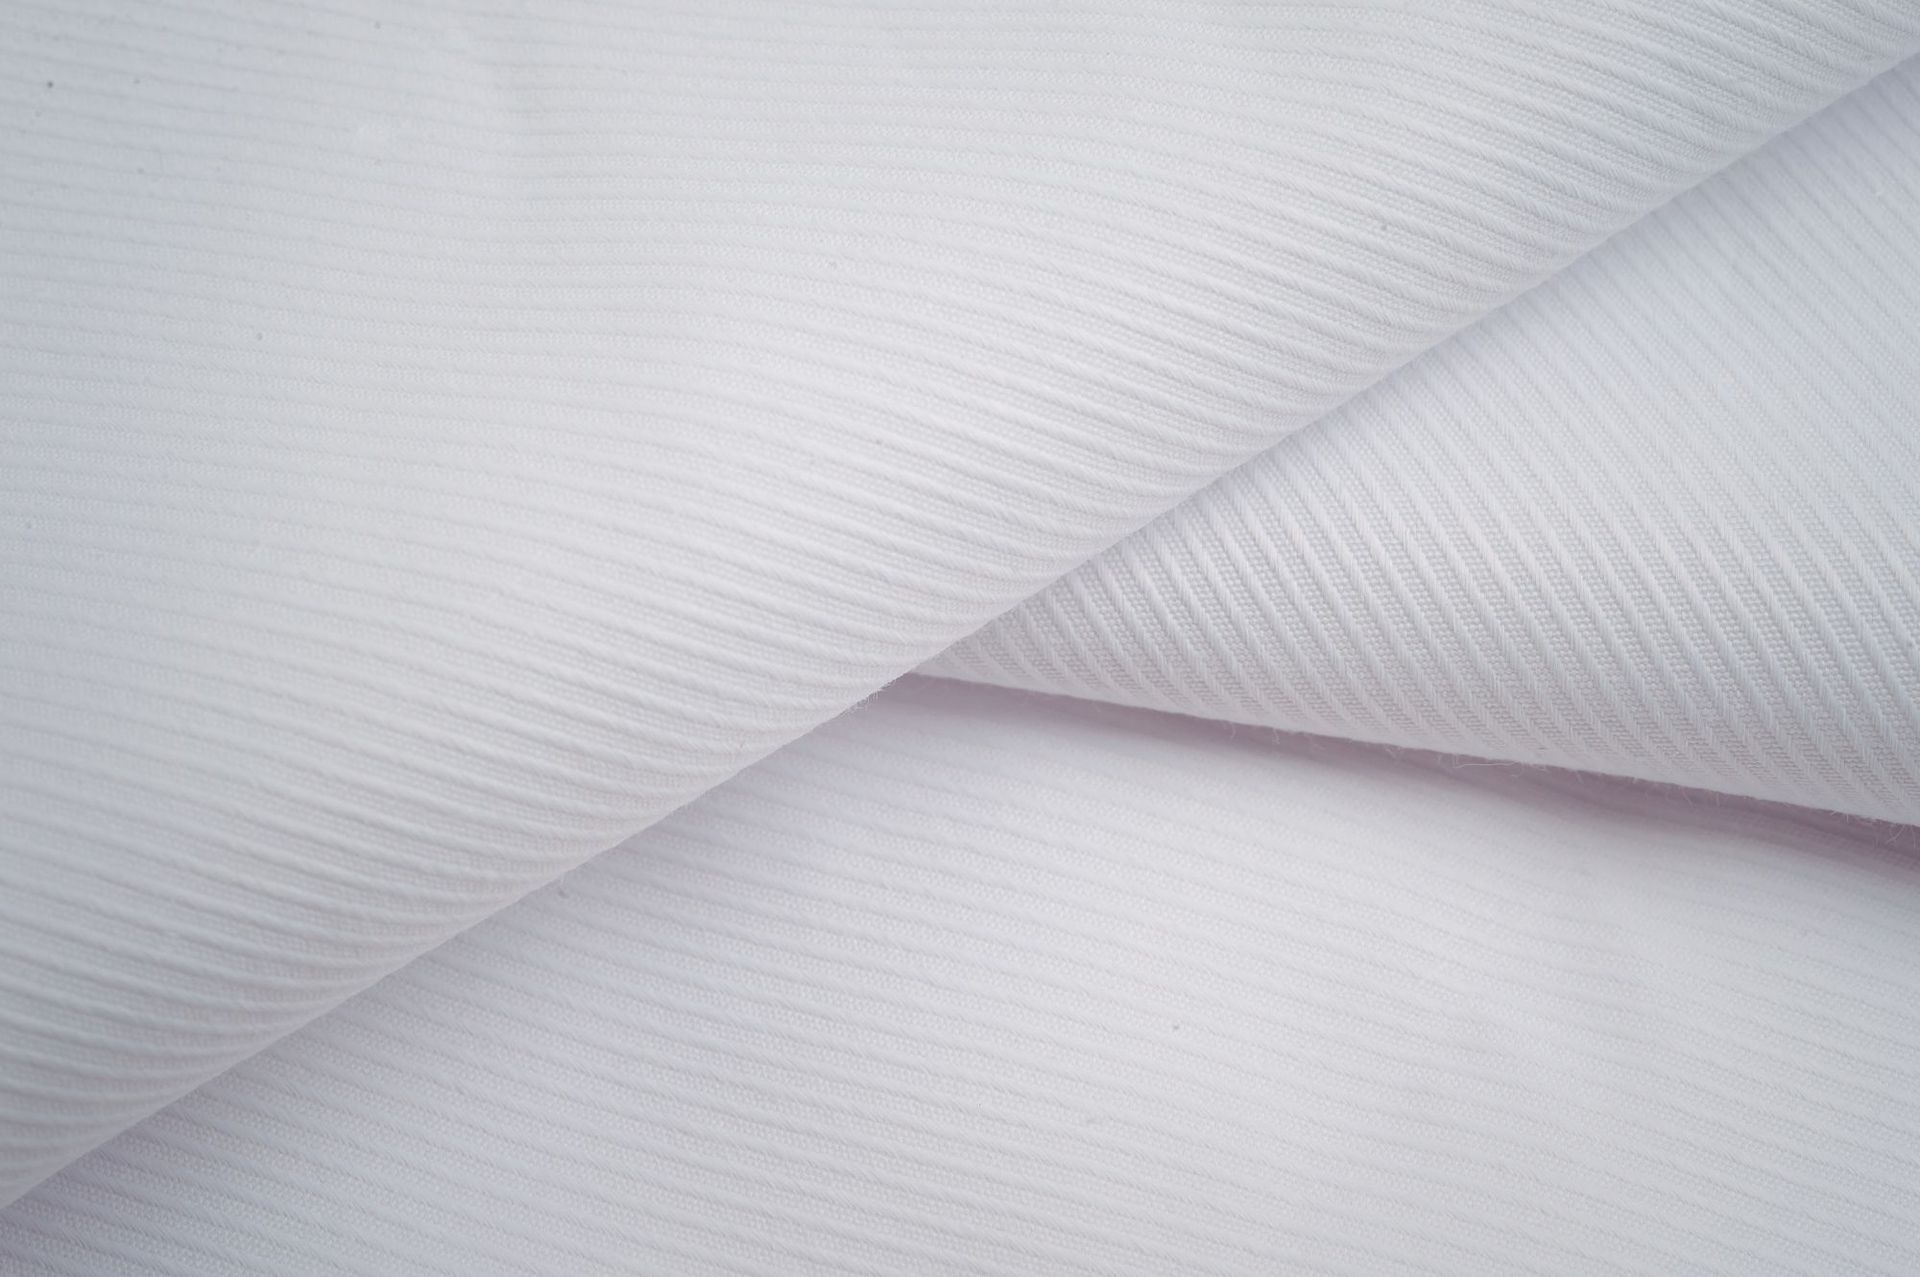 La tela de sarga de algodón blanco pesado gana popularidad en la industria de la moda